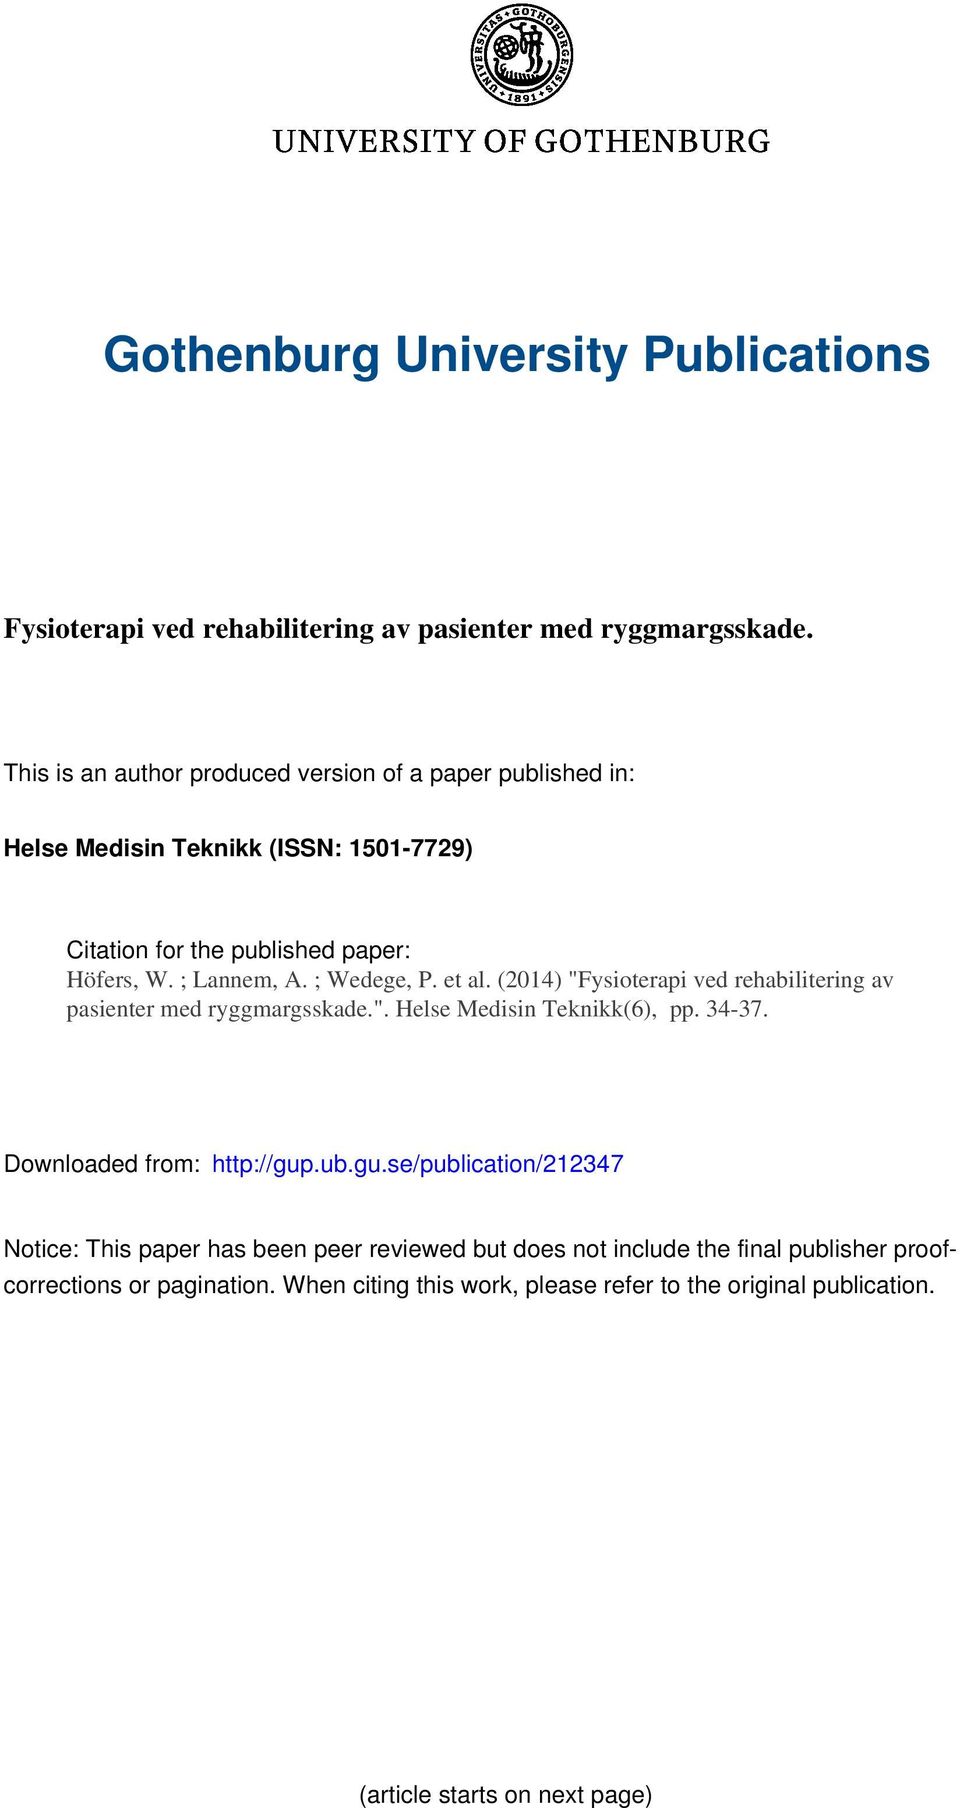 ; Wedege, P. et al. (2014) "Fysioterapi ved rehabilitering av pasienter med ryggmargsskade.". Helse Medisin Teknikk(6), pp. 34-37. Downloaded from: http://gup.ub.